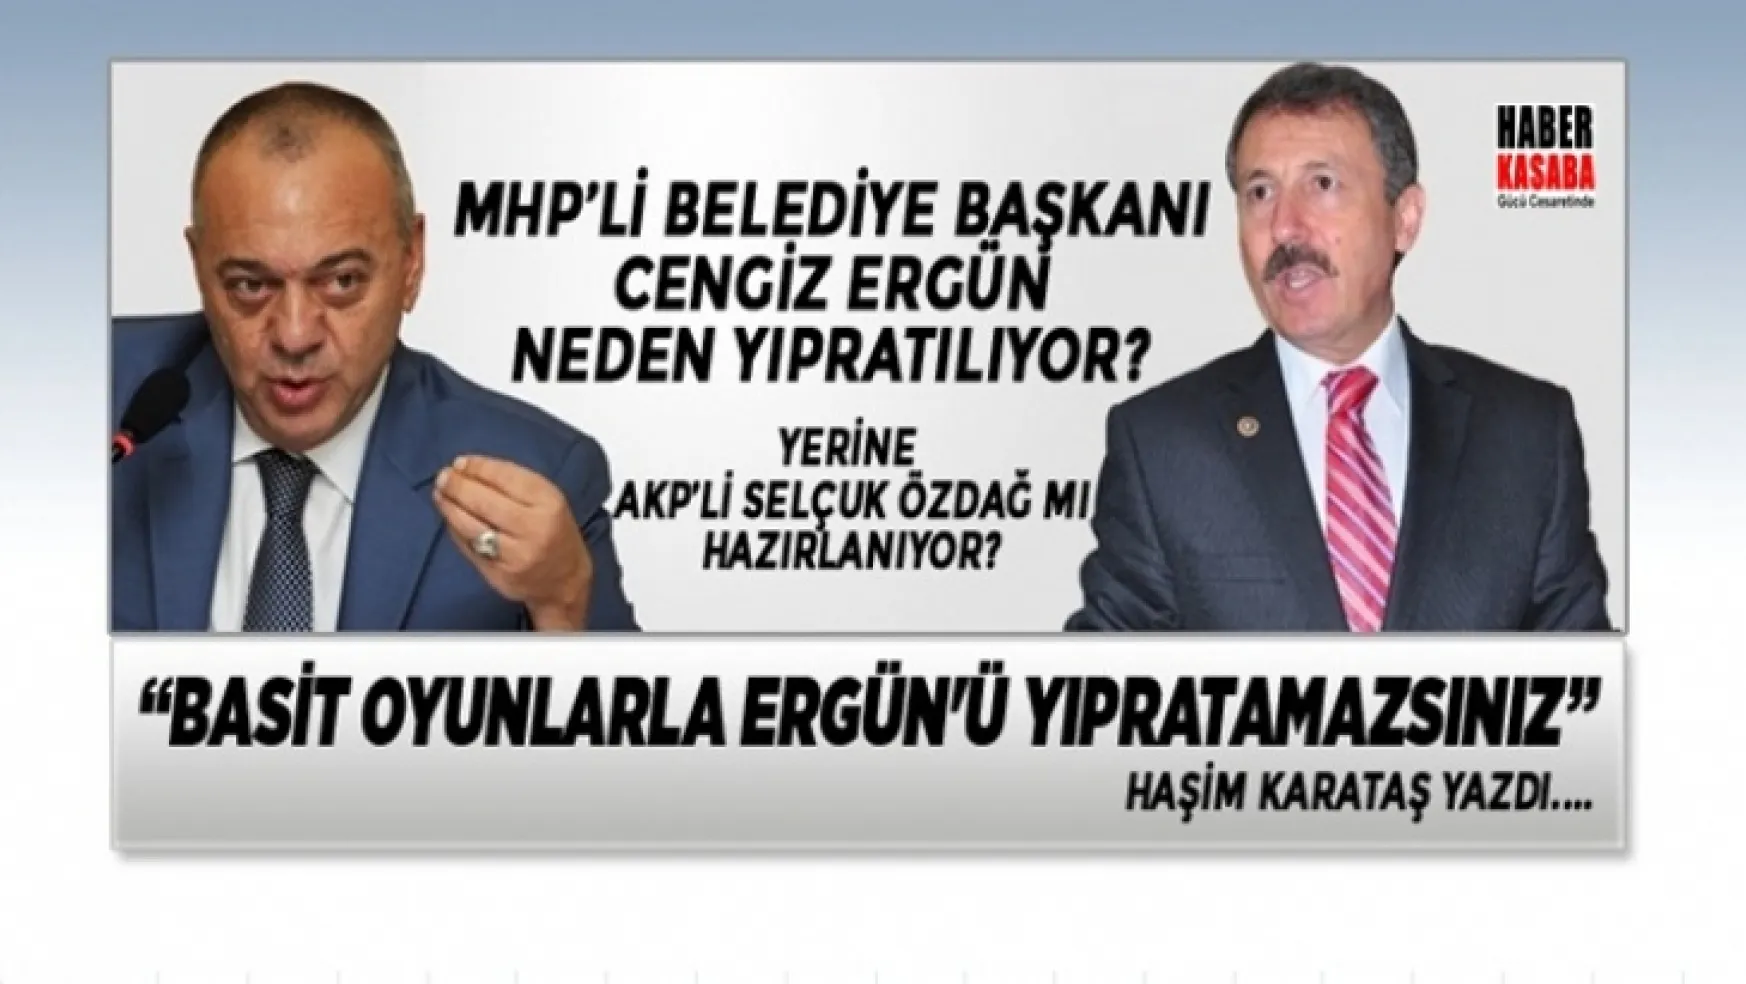 MHP'li Belediye başkanı Cengiz Ergün neden yıpratılıyor?